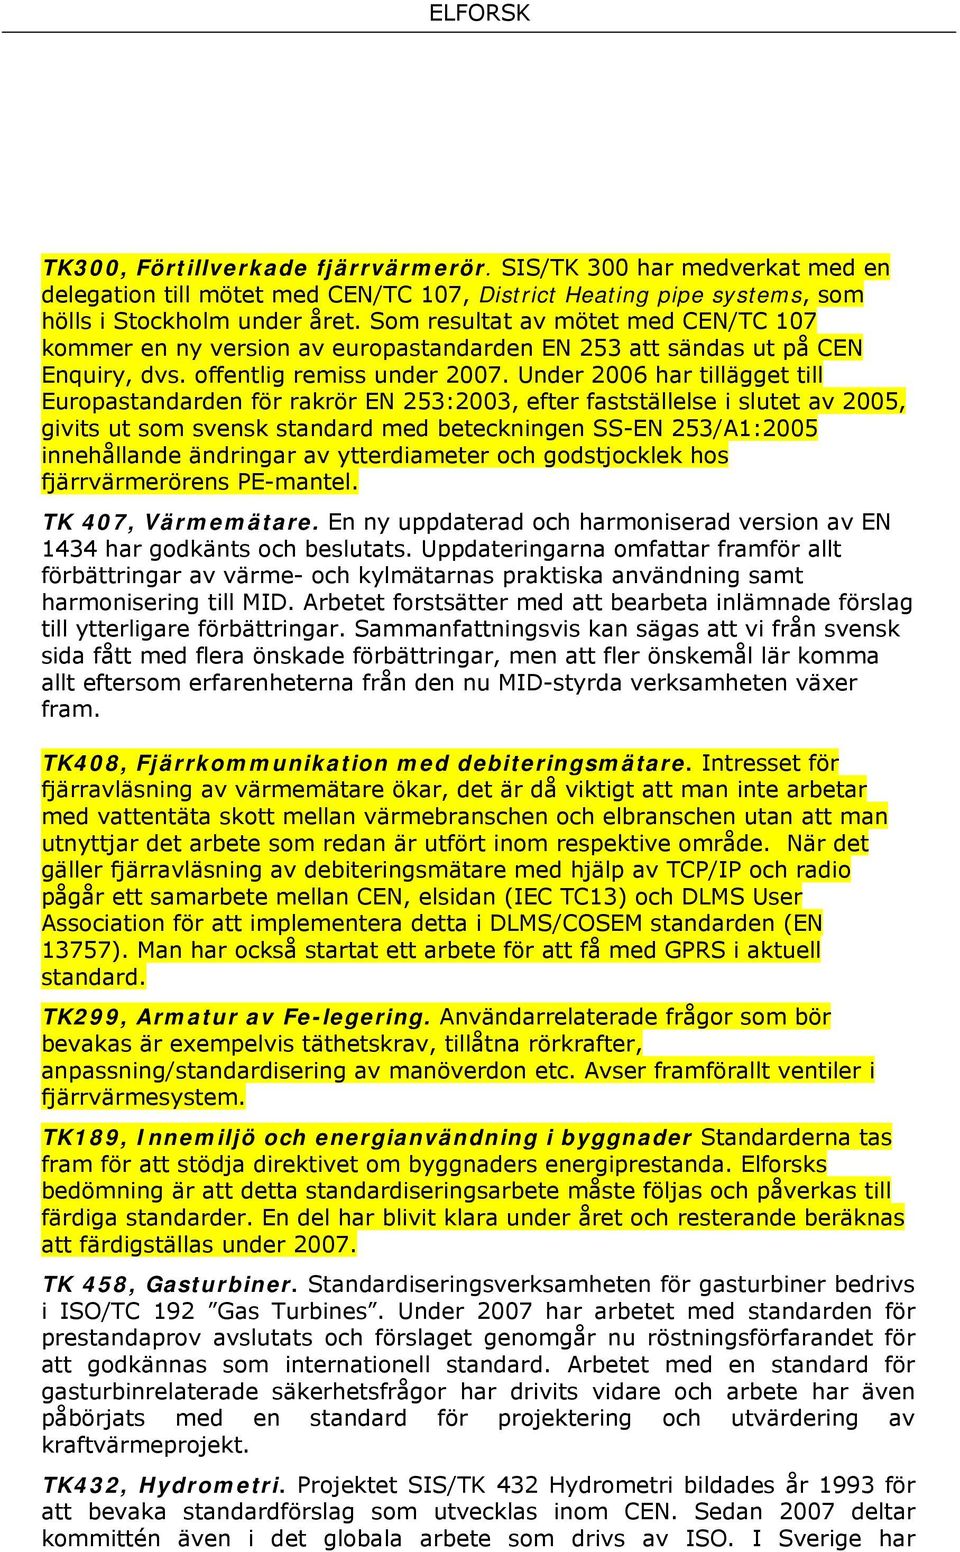 Under 2006 har tillägget till Europastandarden för rakrör EN 253:2003, efter fastställelse i slutet av 2005, givits ut som svensk standard med beteckningen SS-EN 253/A1:2005 innehållande ändringar av